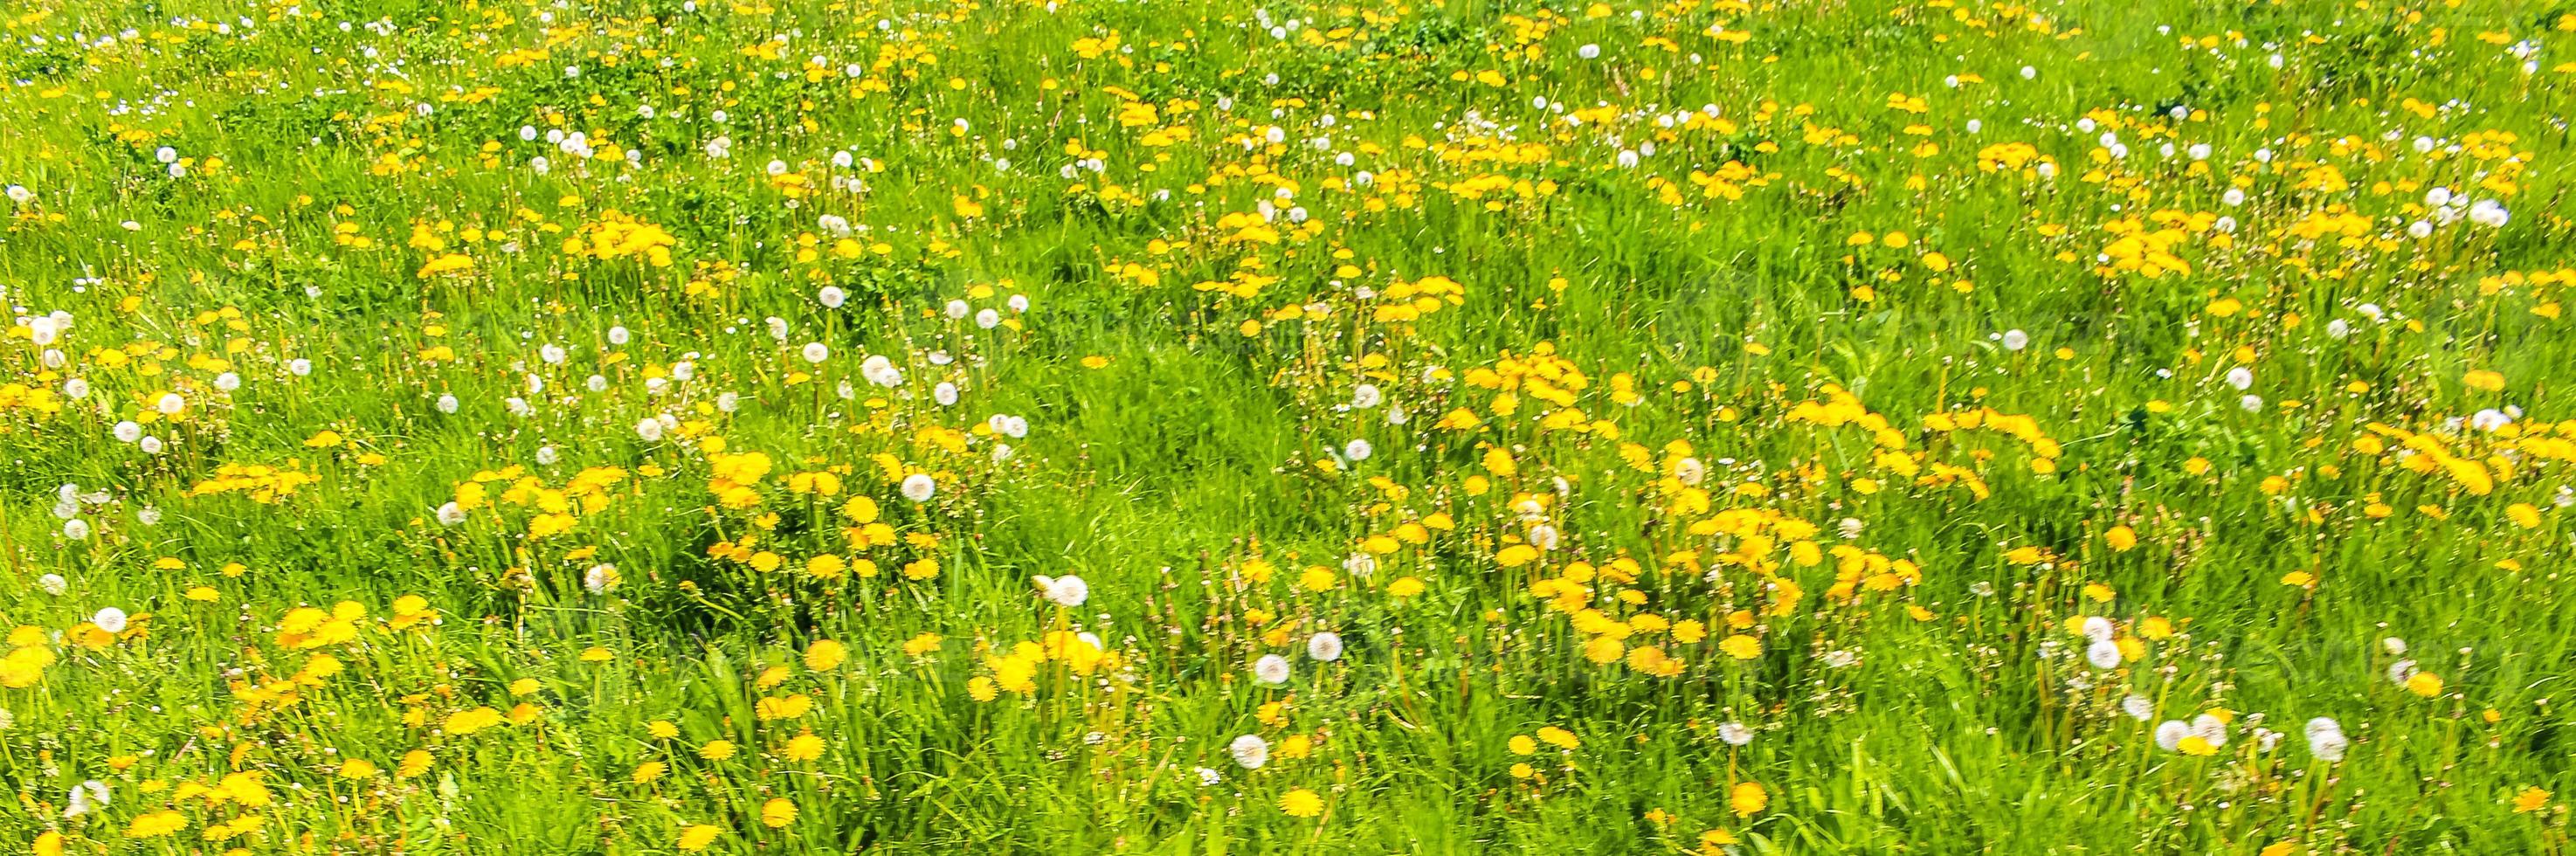 skön gul maskros blomma blåsblomma blommor på grön äng Tyskland. foto